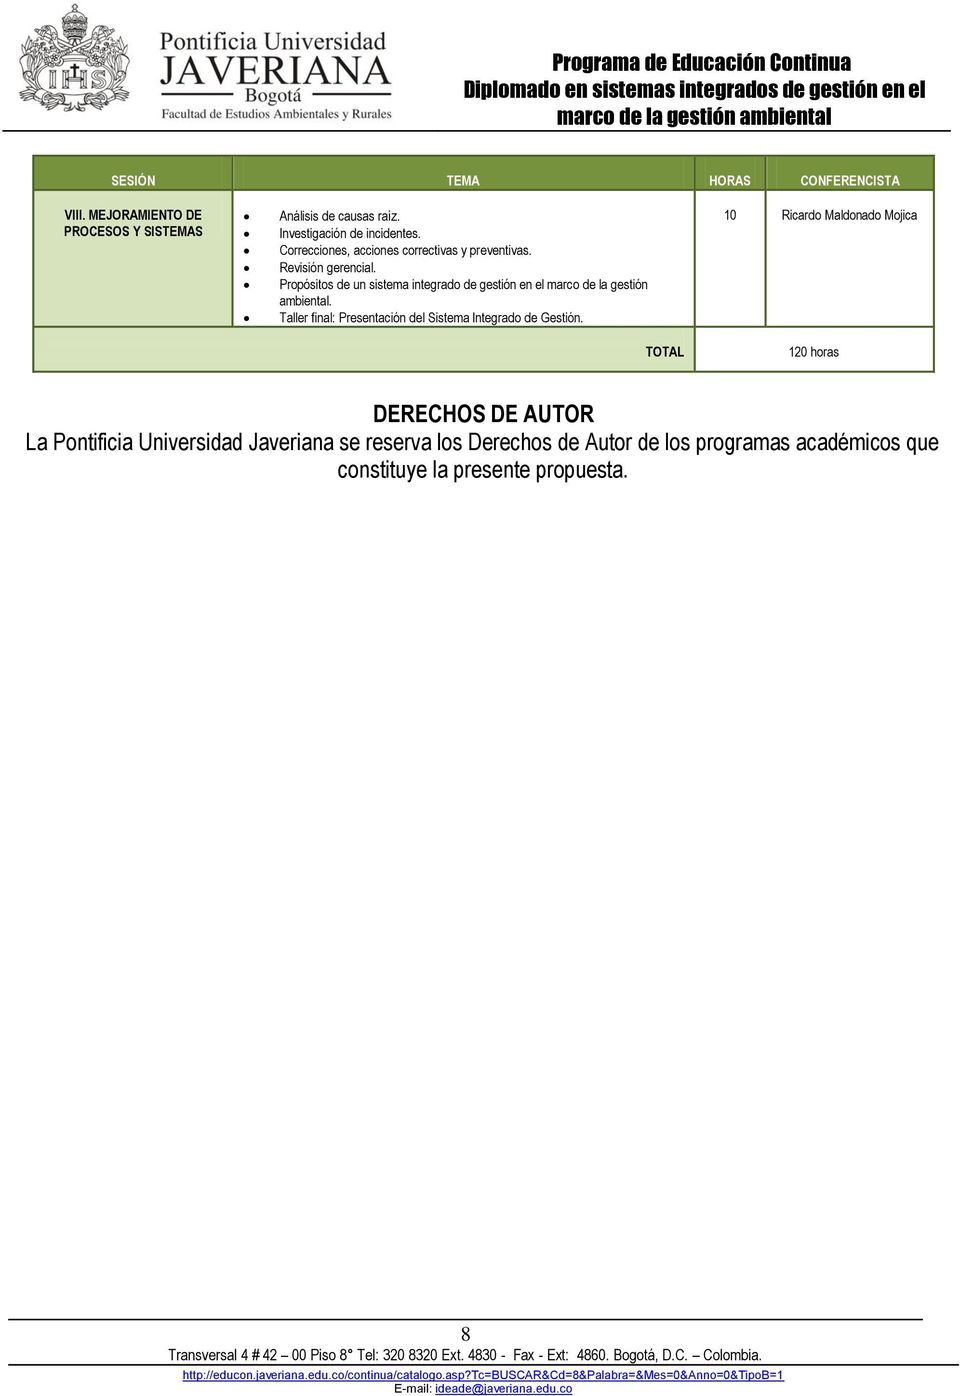 Propósitos de un sistema integrado de gestión en el marco de la gestión ambiental.